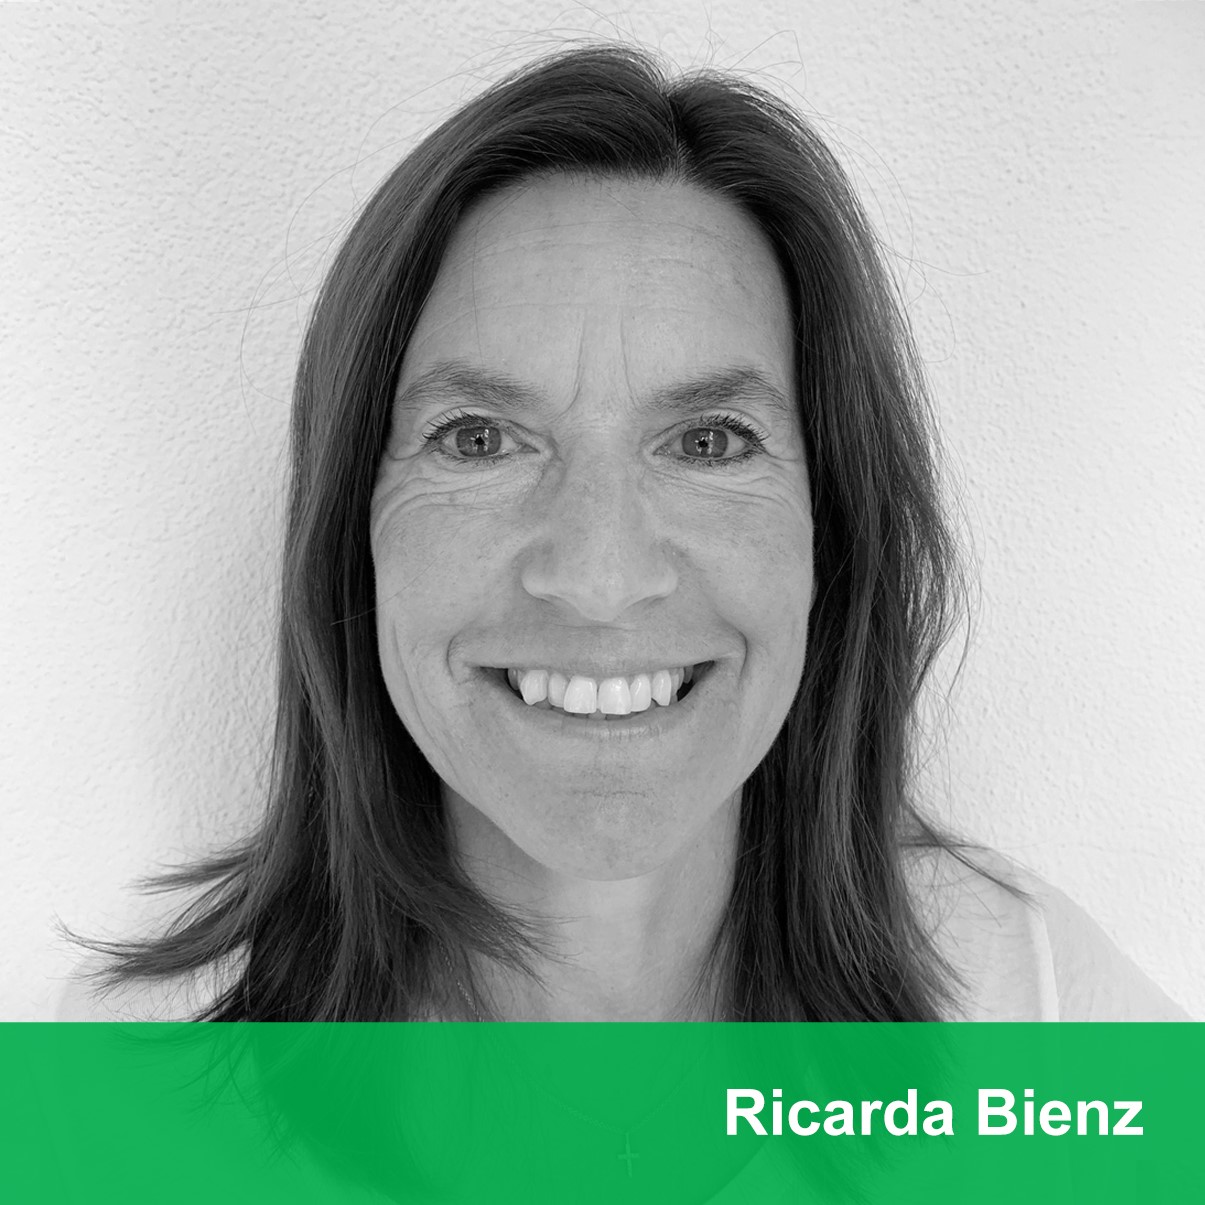 Ricarda Bienz